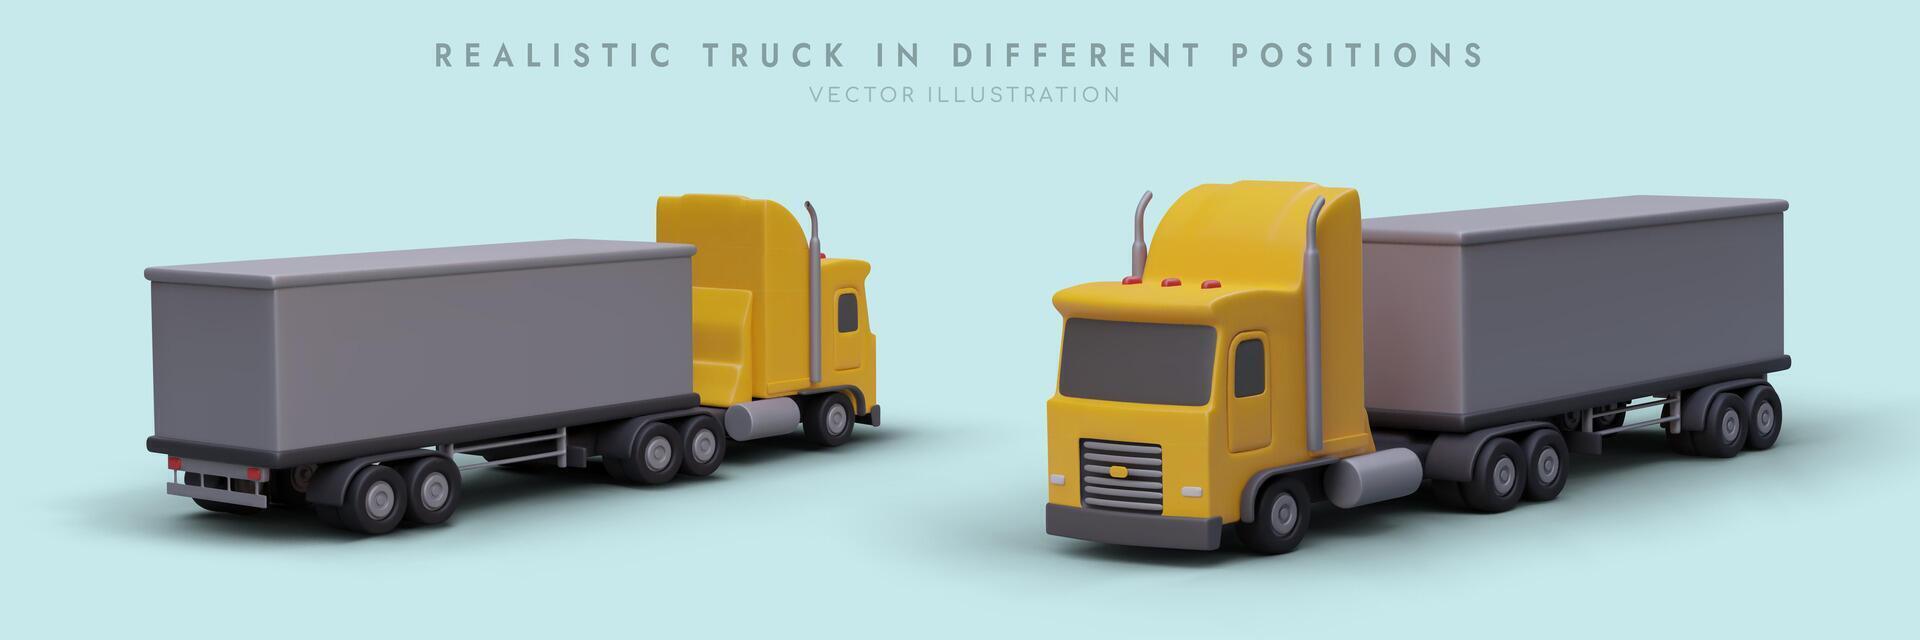 realistisch vrachtwagens in verschillend posities. voorkant en terug visie vector